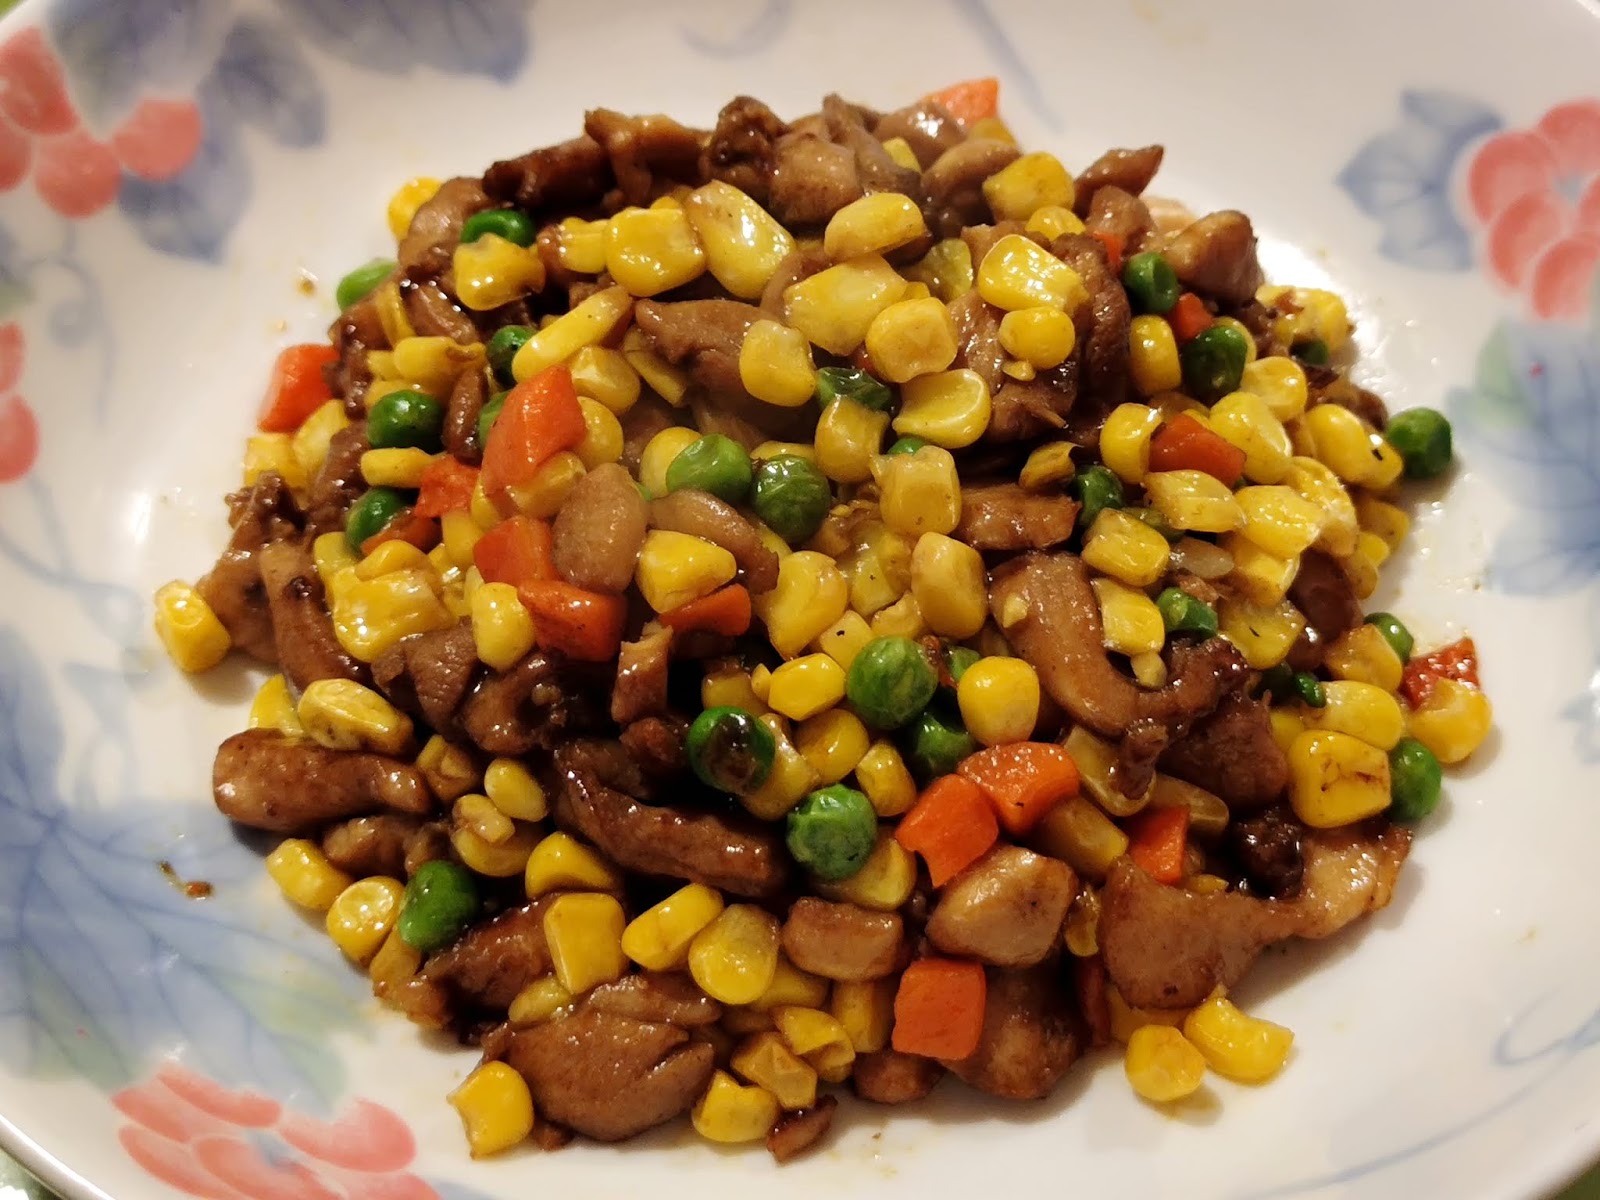 椒鹽粟米食譜、做法 | 高太廚房的Cook1Cook食譜分享